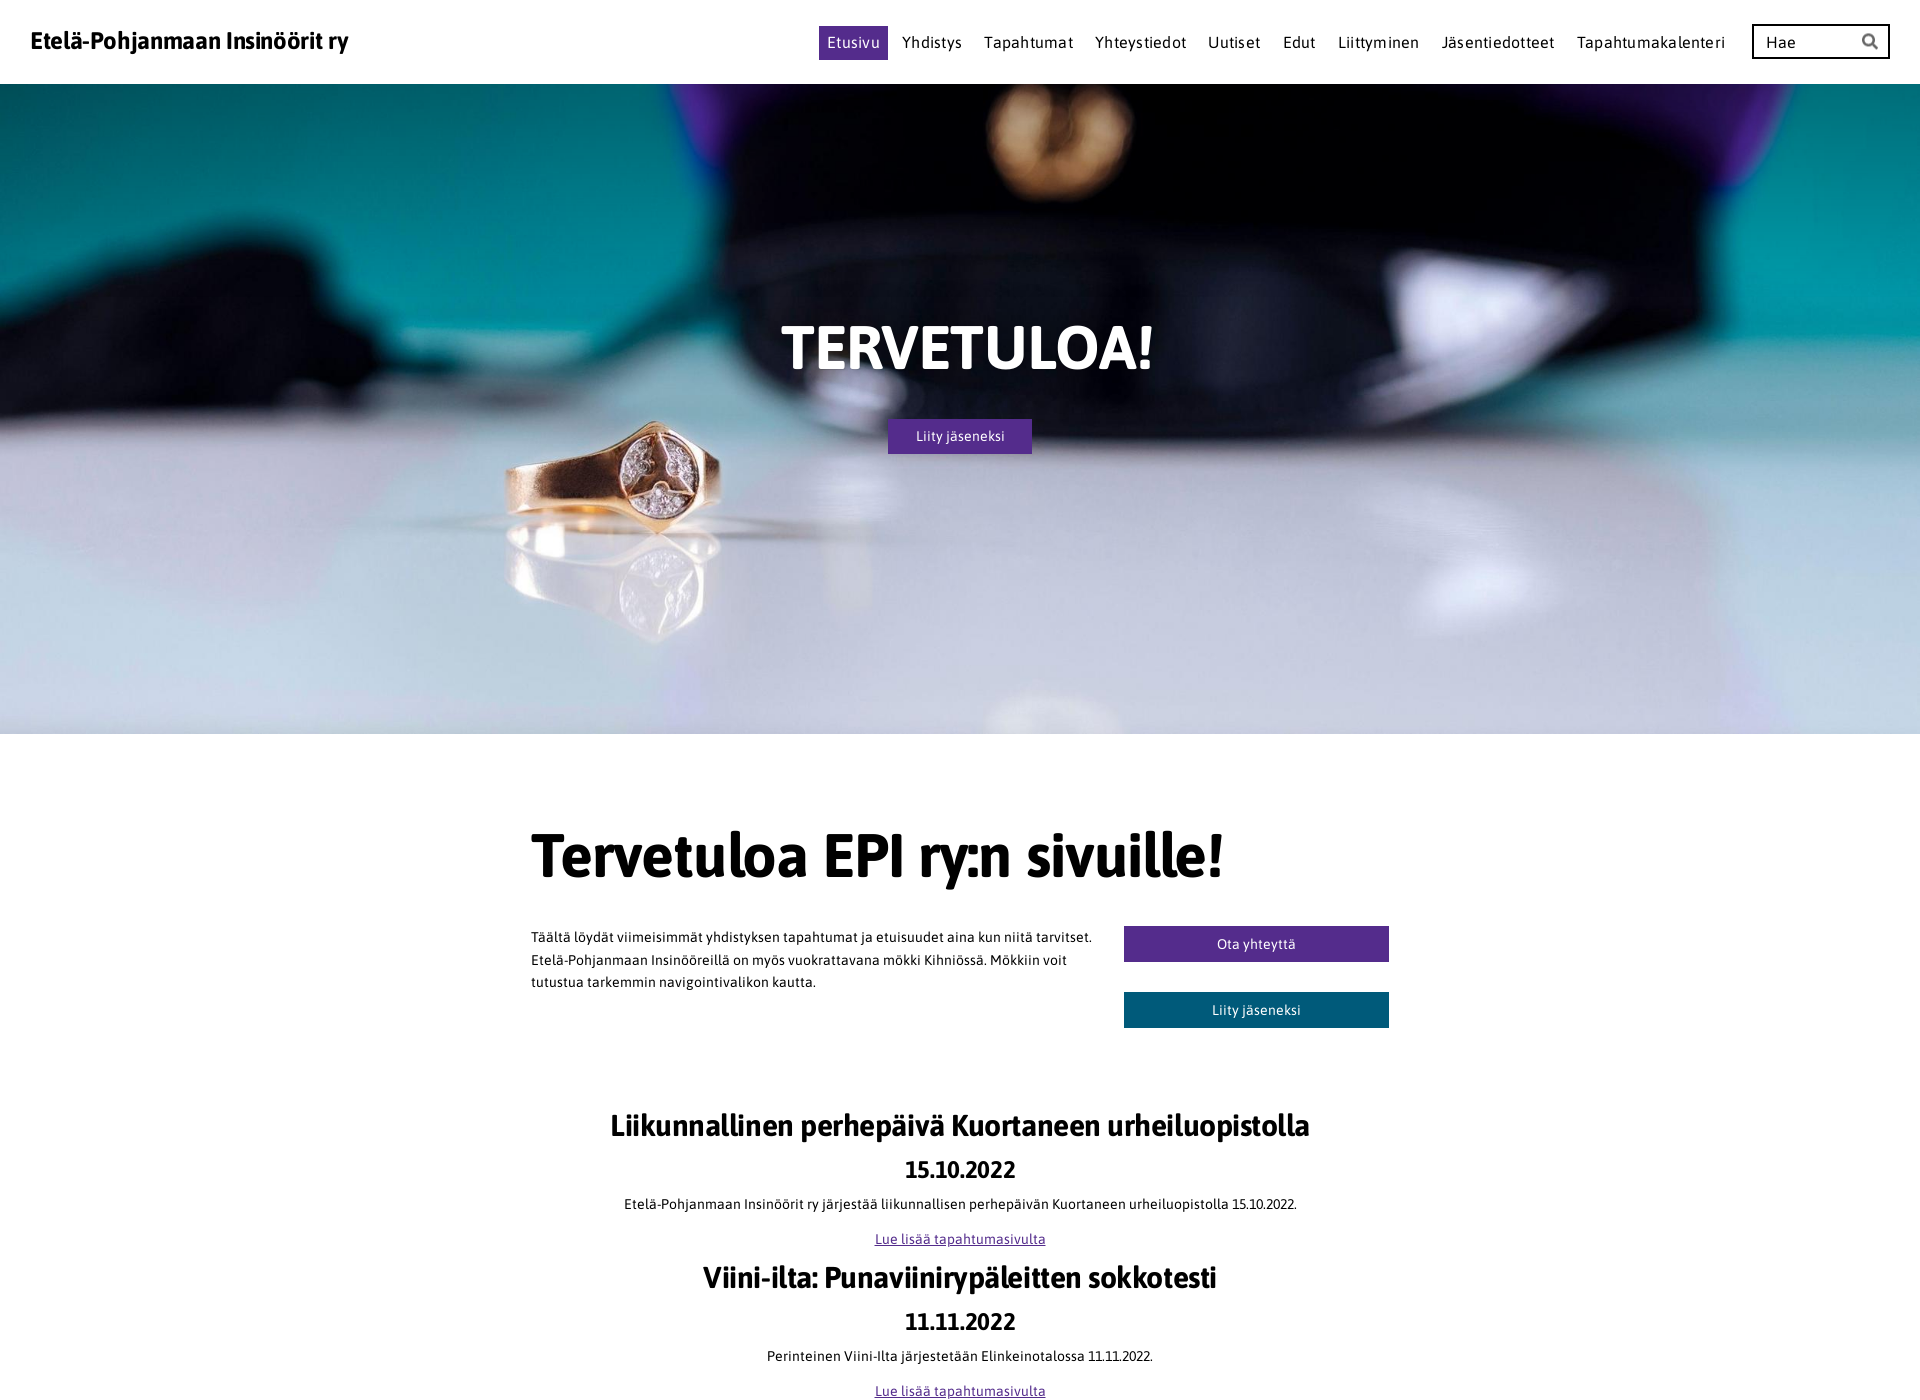 Näyttökuva epiry.fi